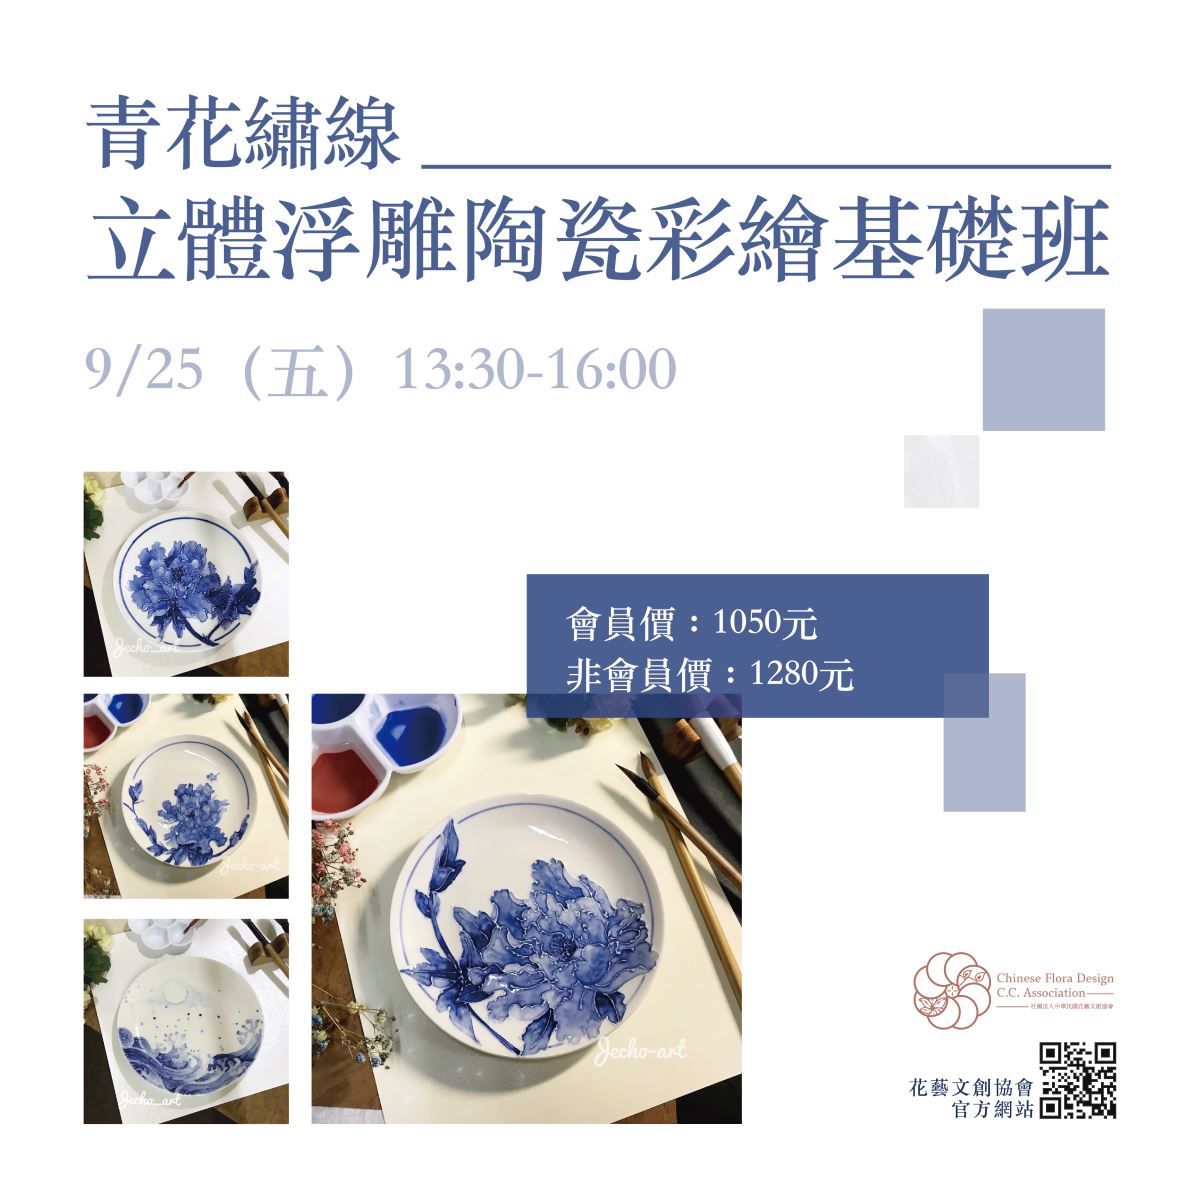 CFCCA 九月 青花繡線-立體浮雕陶瓷彩繪基礎班